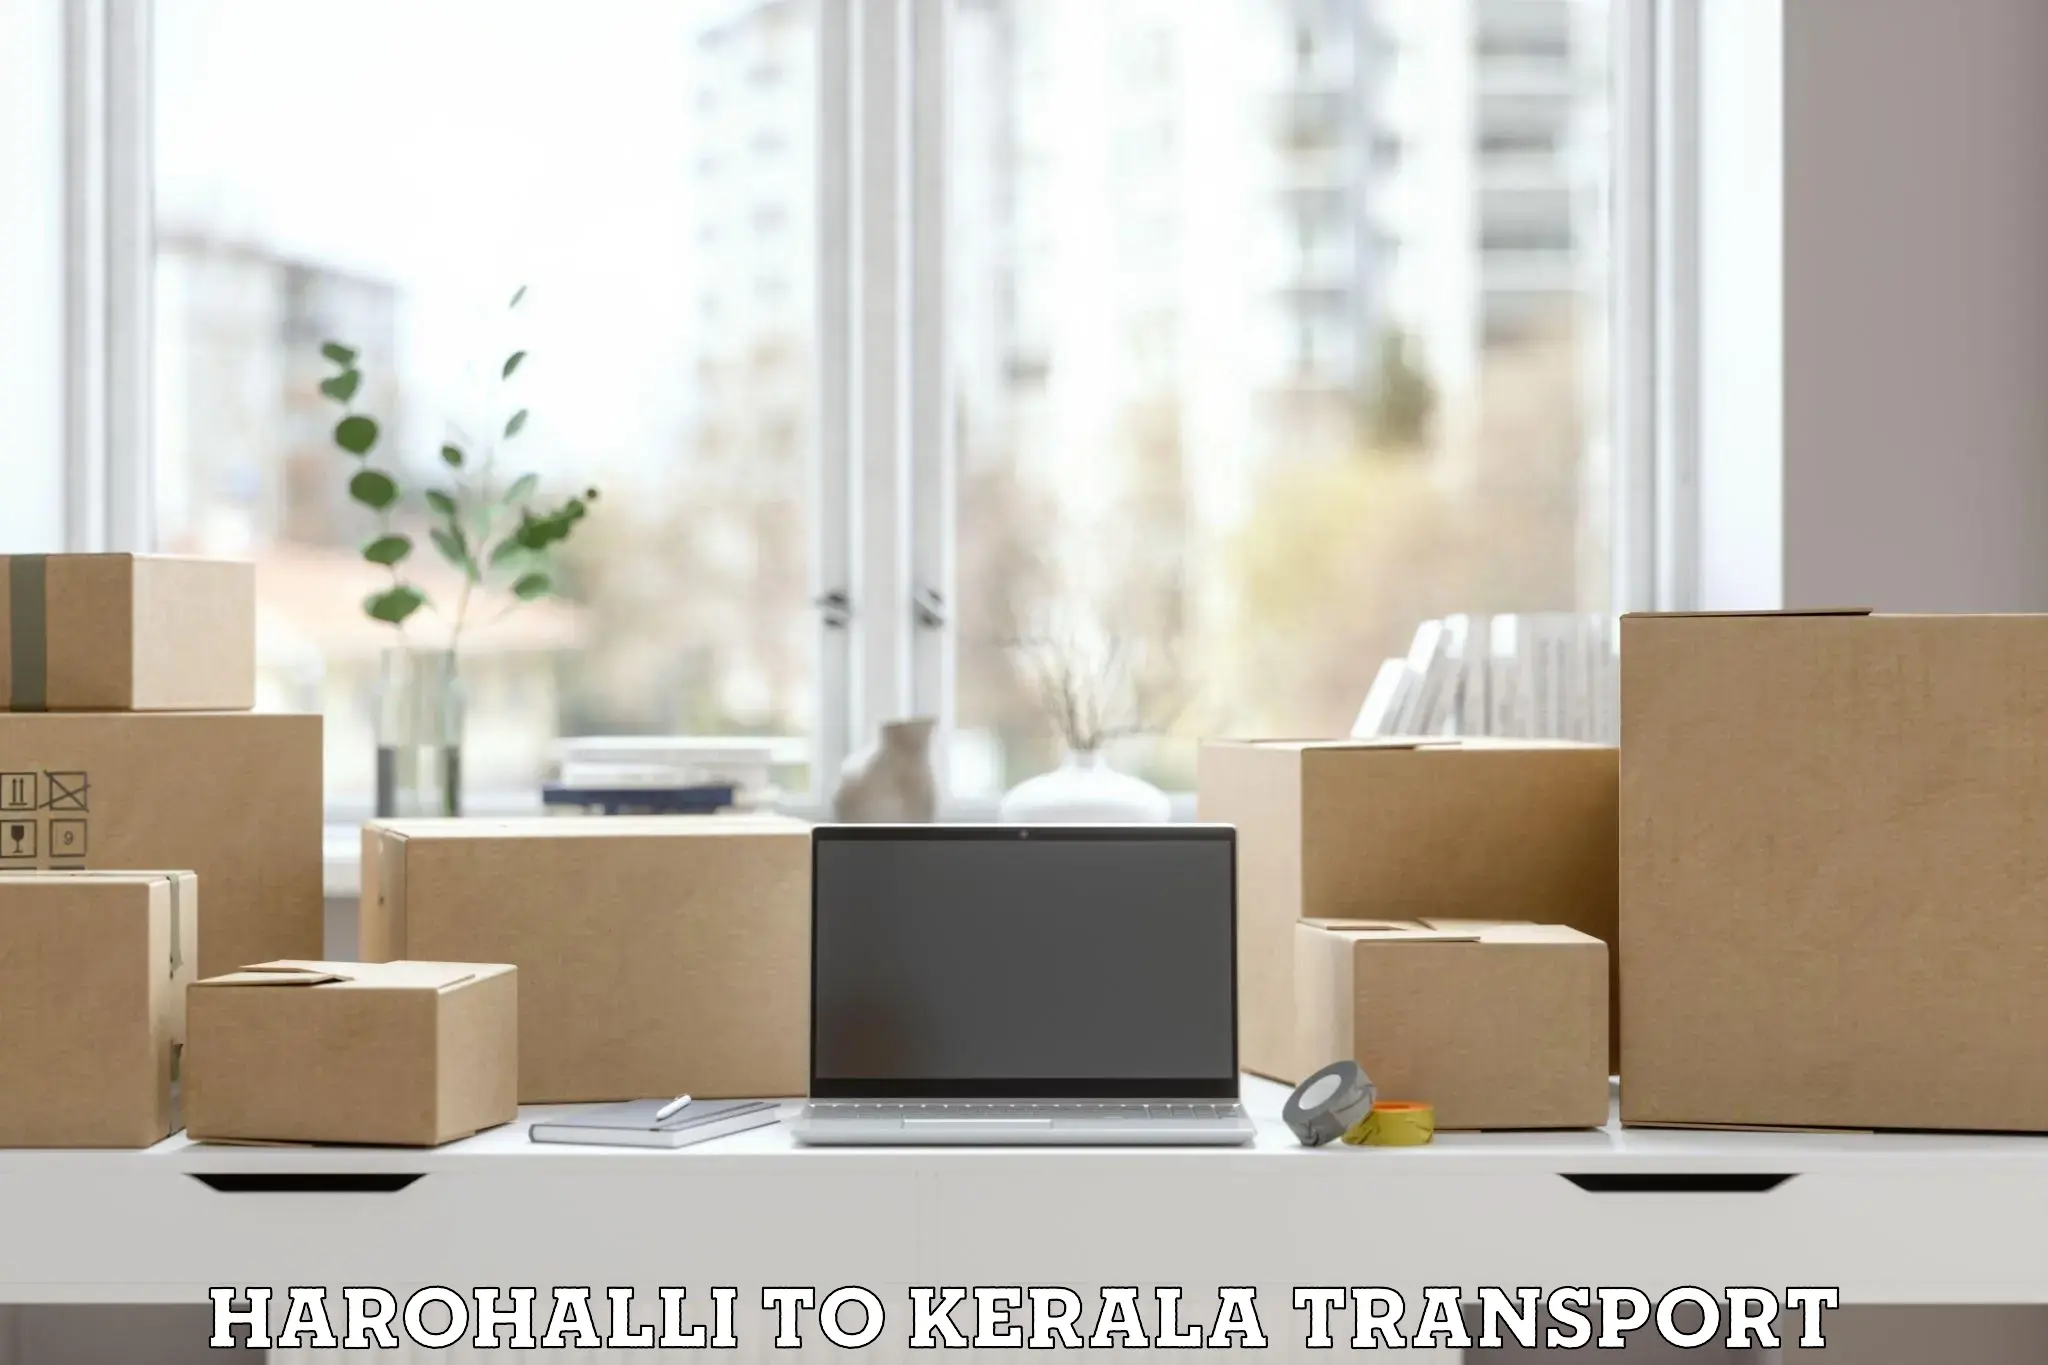 Two wheeler parcel service Harohalli to Kalluvathukkal